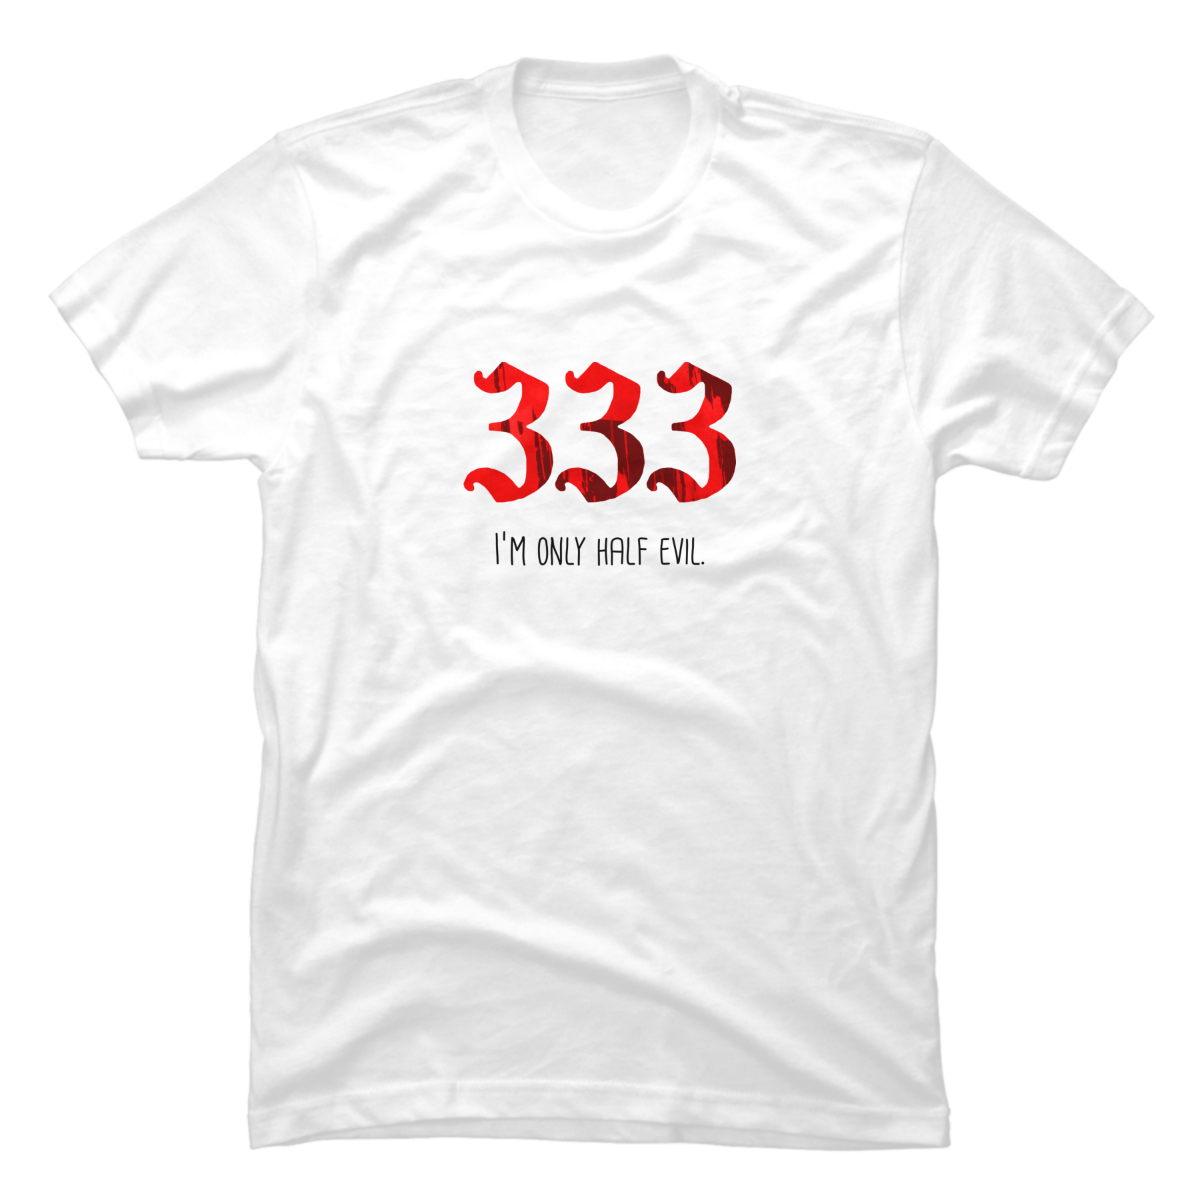 333 t shirt